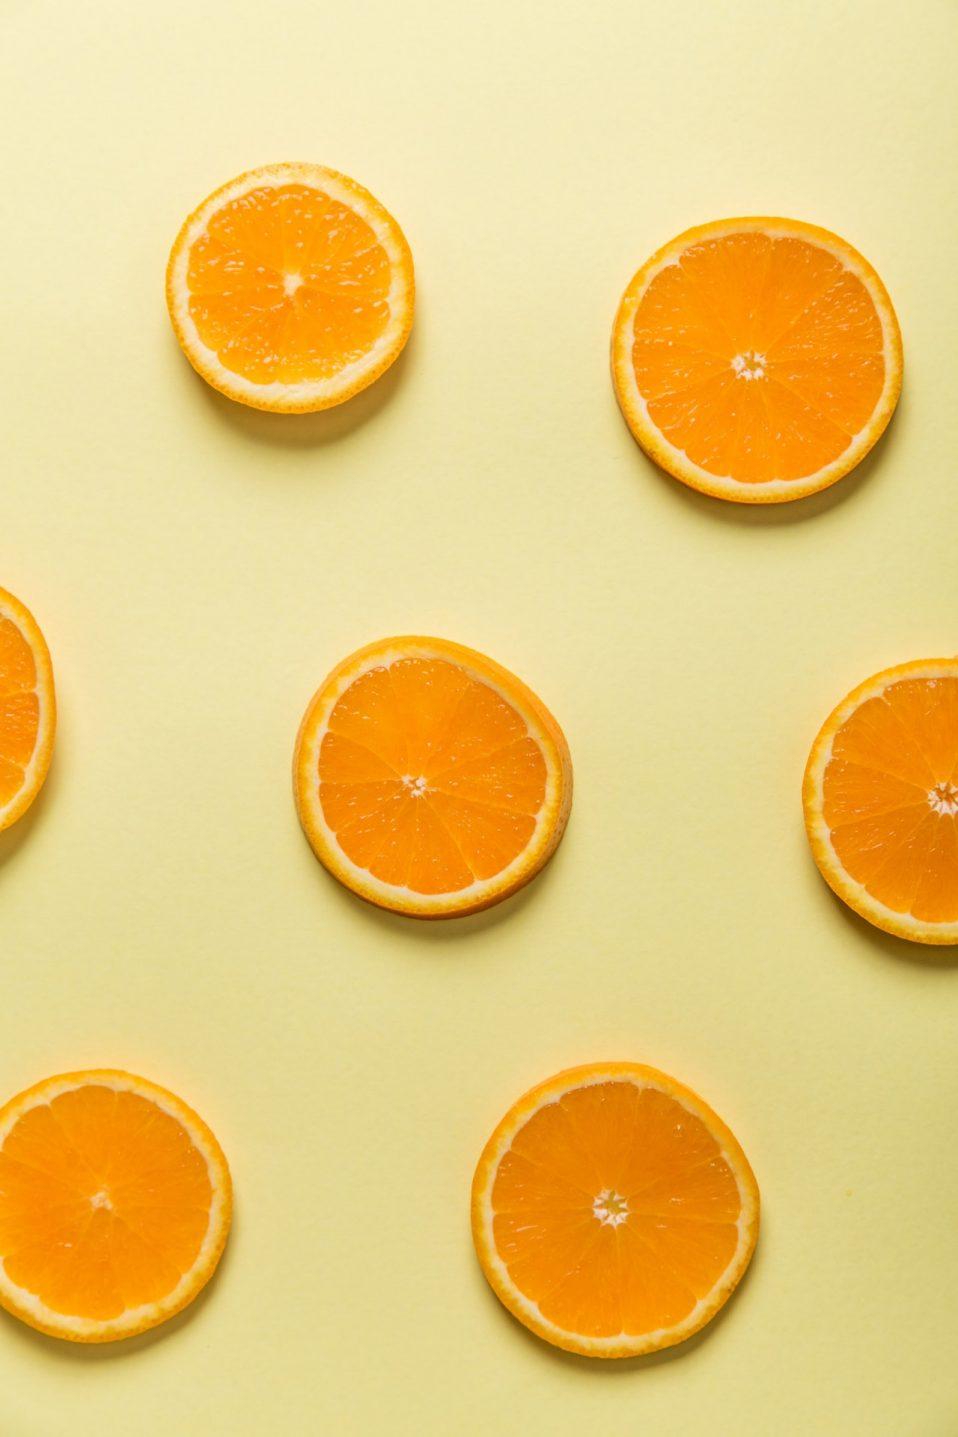 תפוזים - מפירות הההדר הבולטים ביותר, וגאווה כחול לבן. כך תדשנו אותם נכון על מנת למקסם כמות ואיכות.